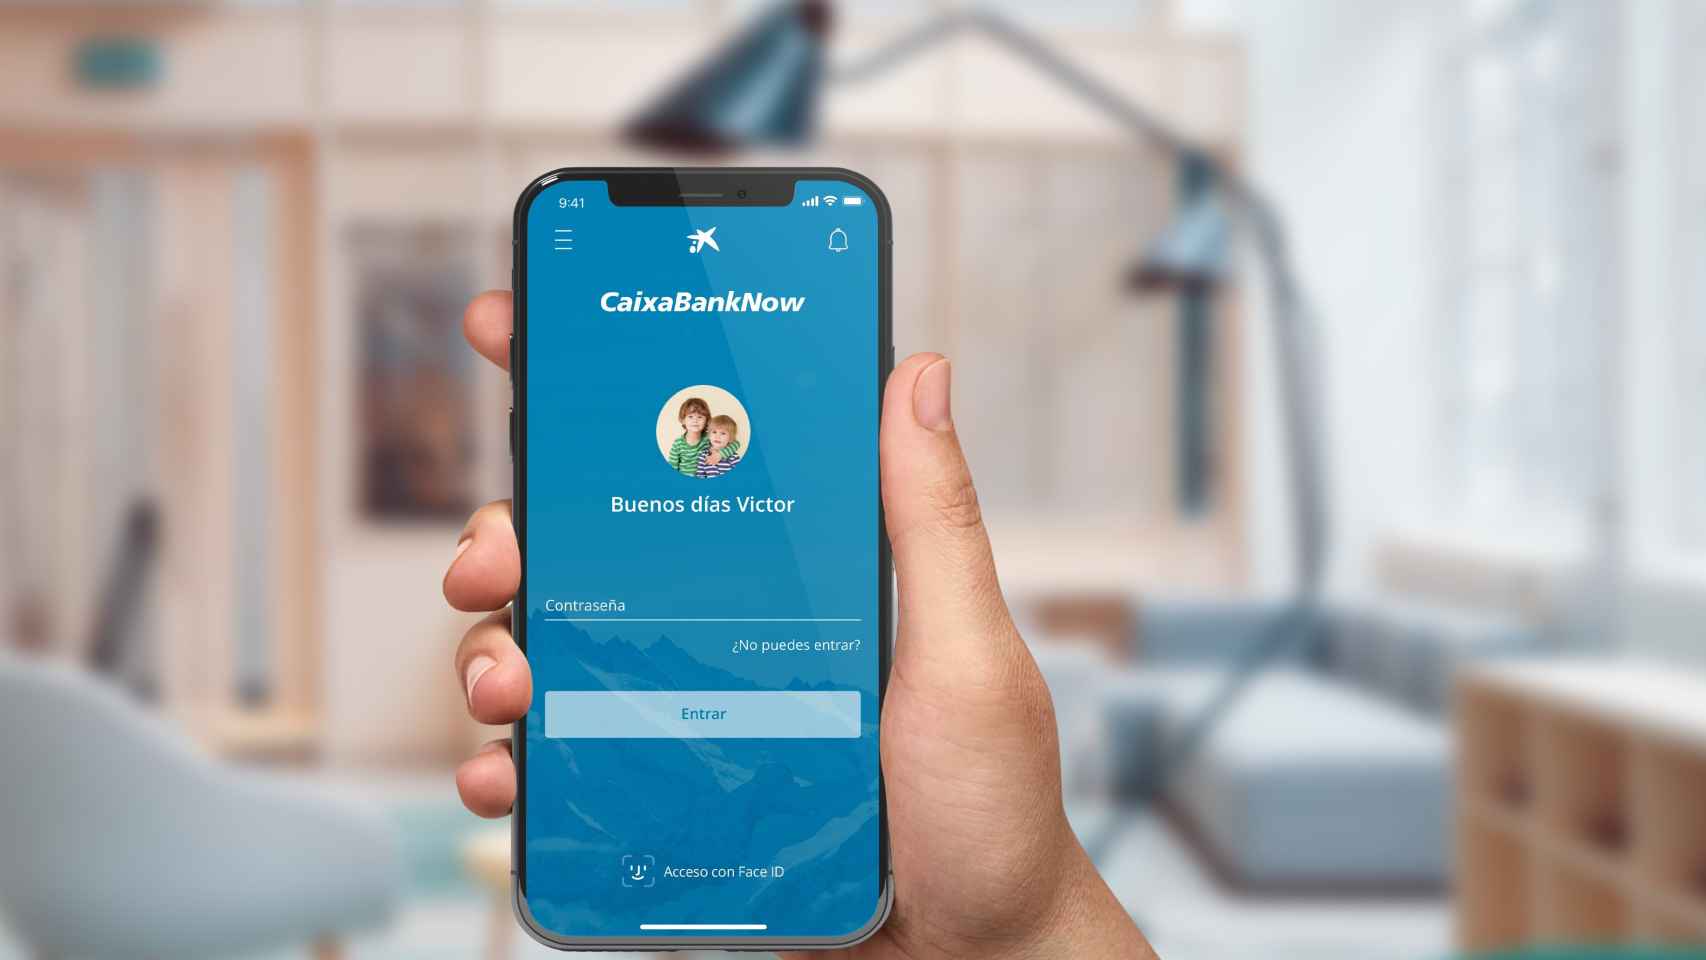 La aplicación de CaixaBank en un smartphone / CAIXABANK